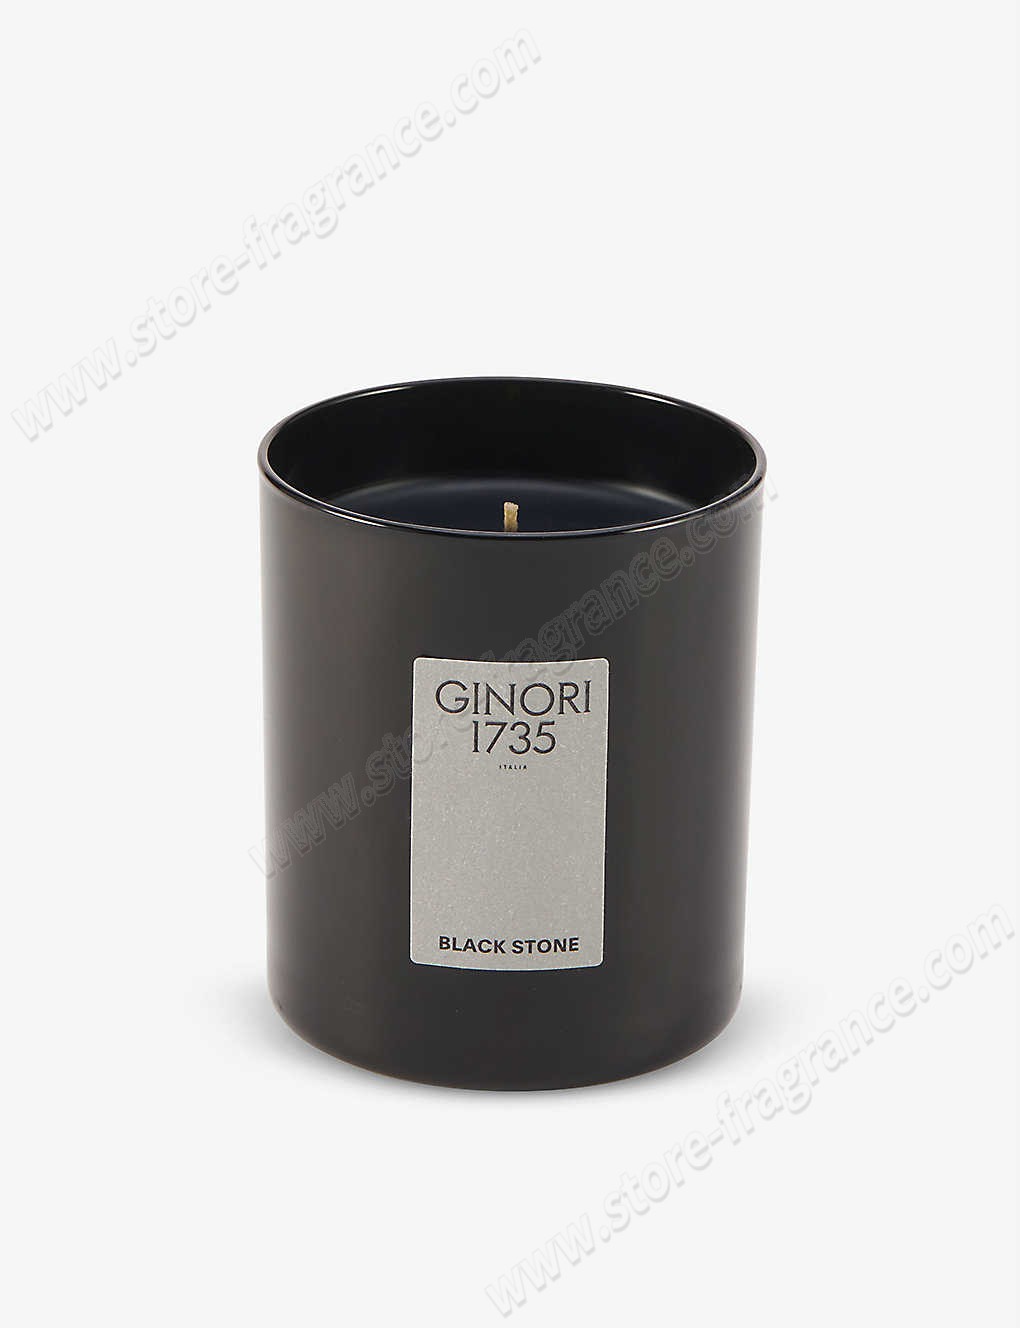 GINORI 1735/Il Seguace Black Stone scented candle 350g ✿ Discount Store - GINORI 1735/Il Seguace Black Stone scented candle 350g ✿ Discount Store